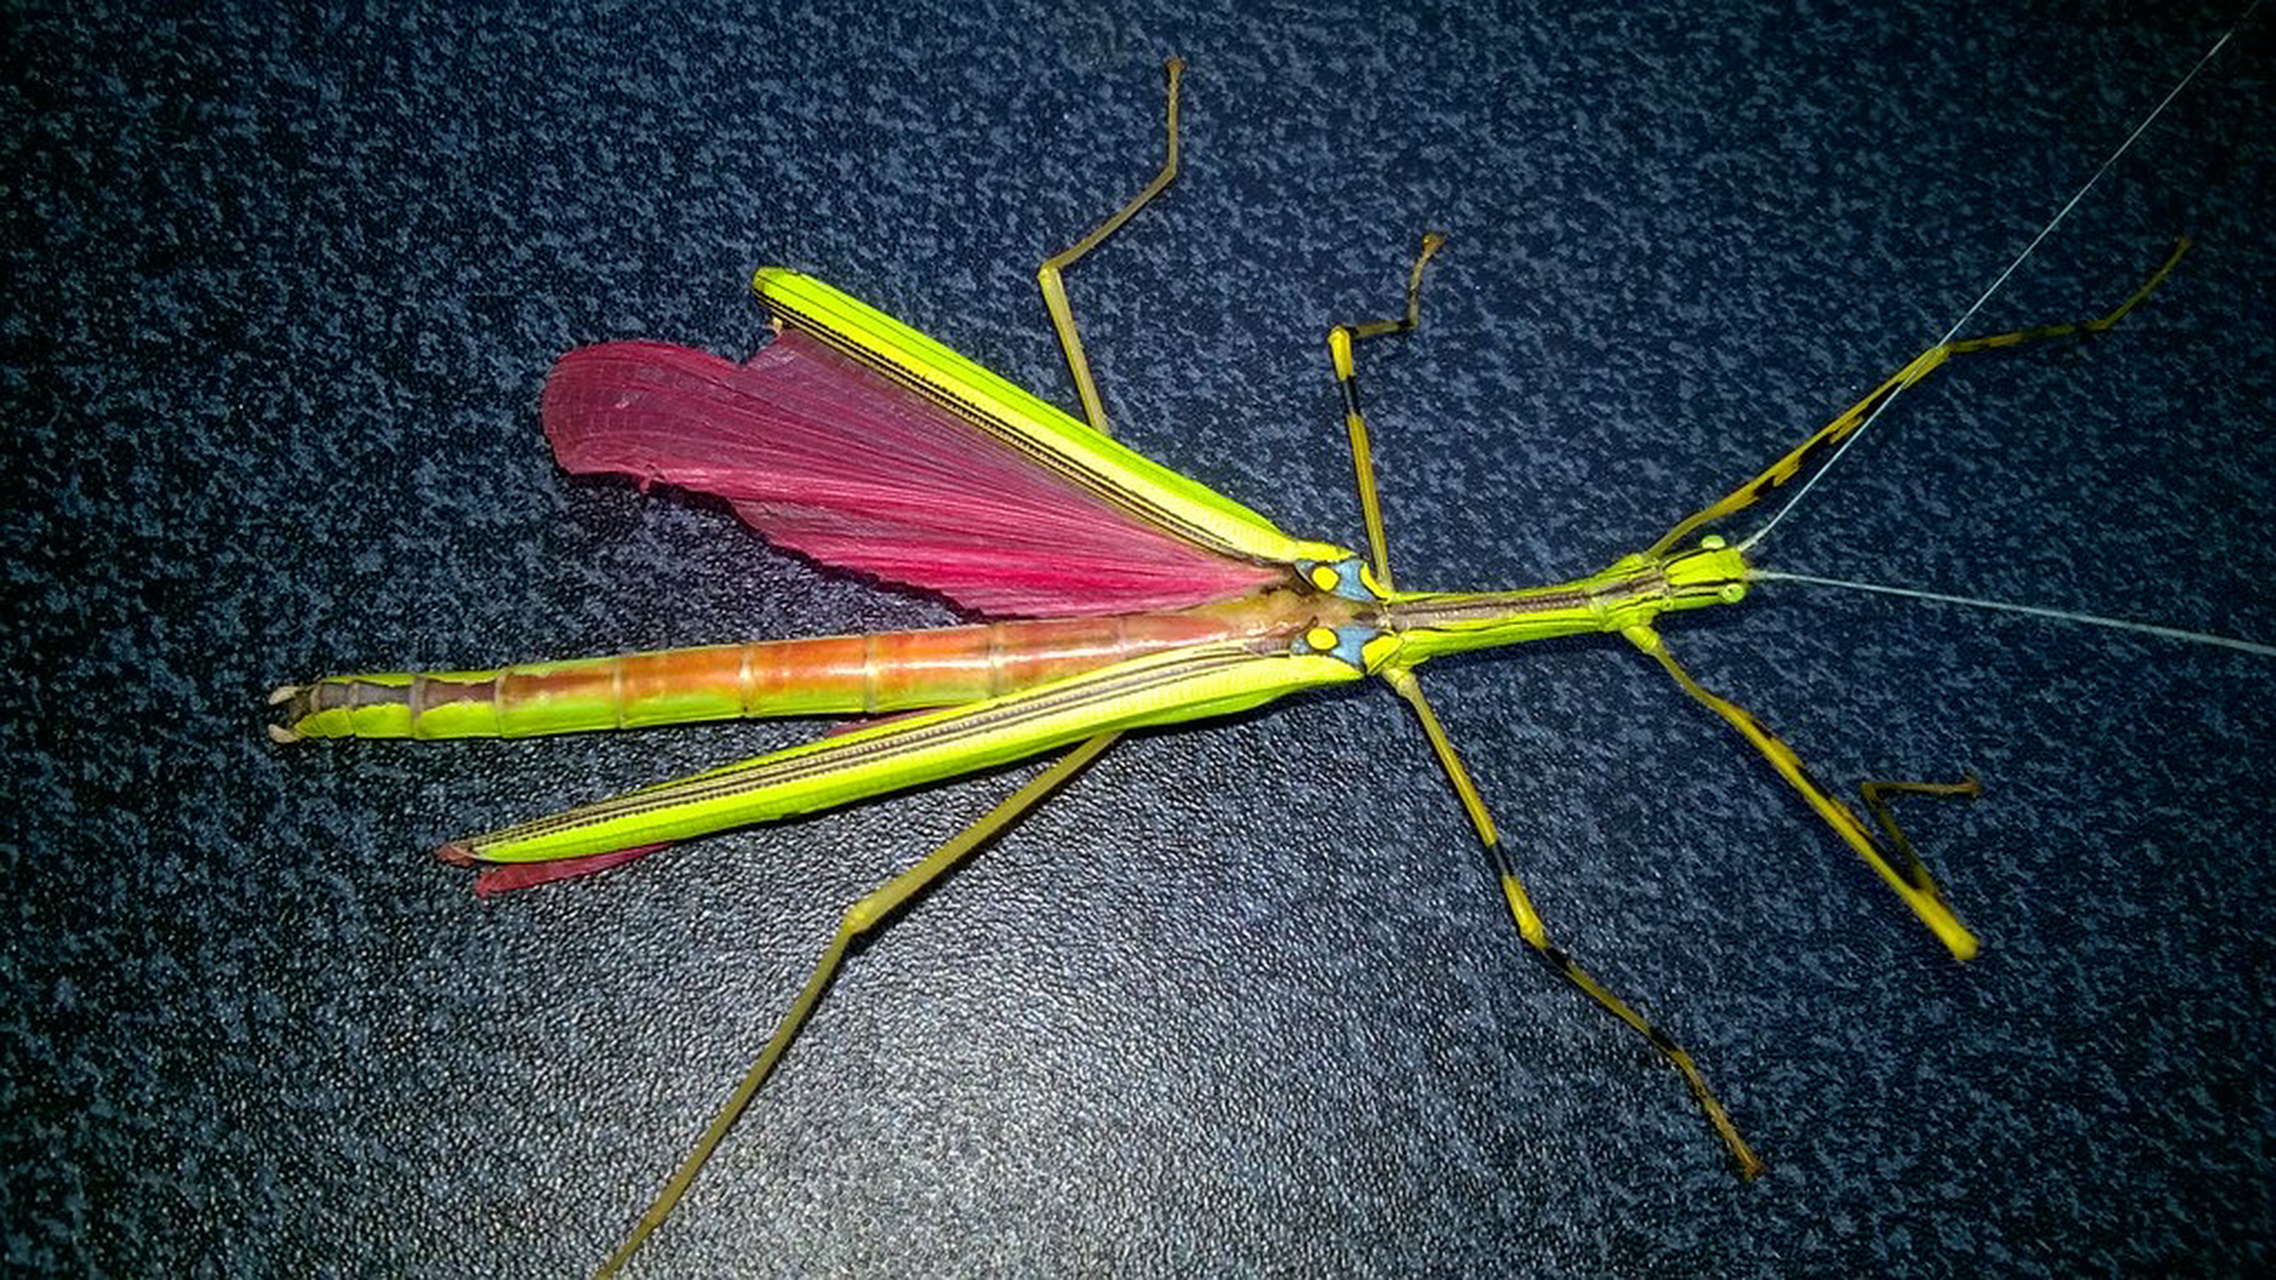 粉红色的竹节虫 拉丁名: necroscia annulipes 马来西亚环纹死灵 来自